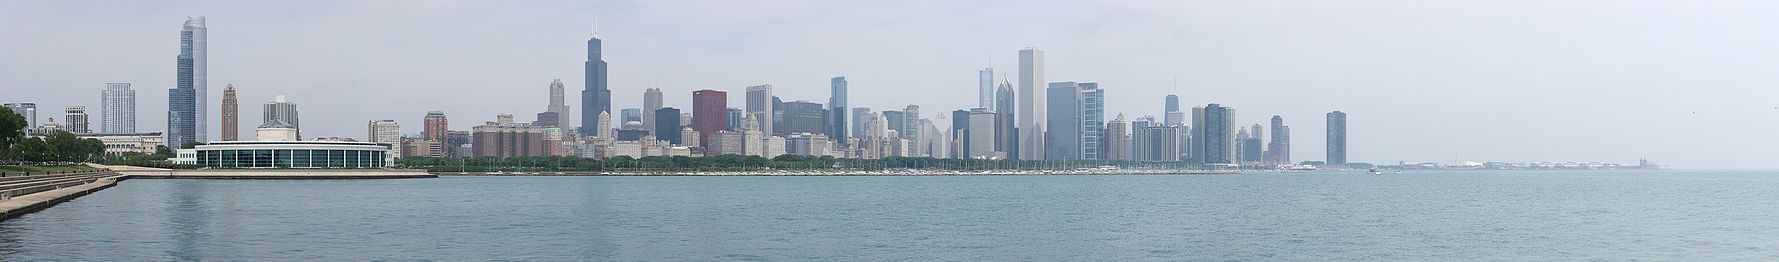 Панорама Чикаго в 2010 году